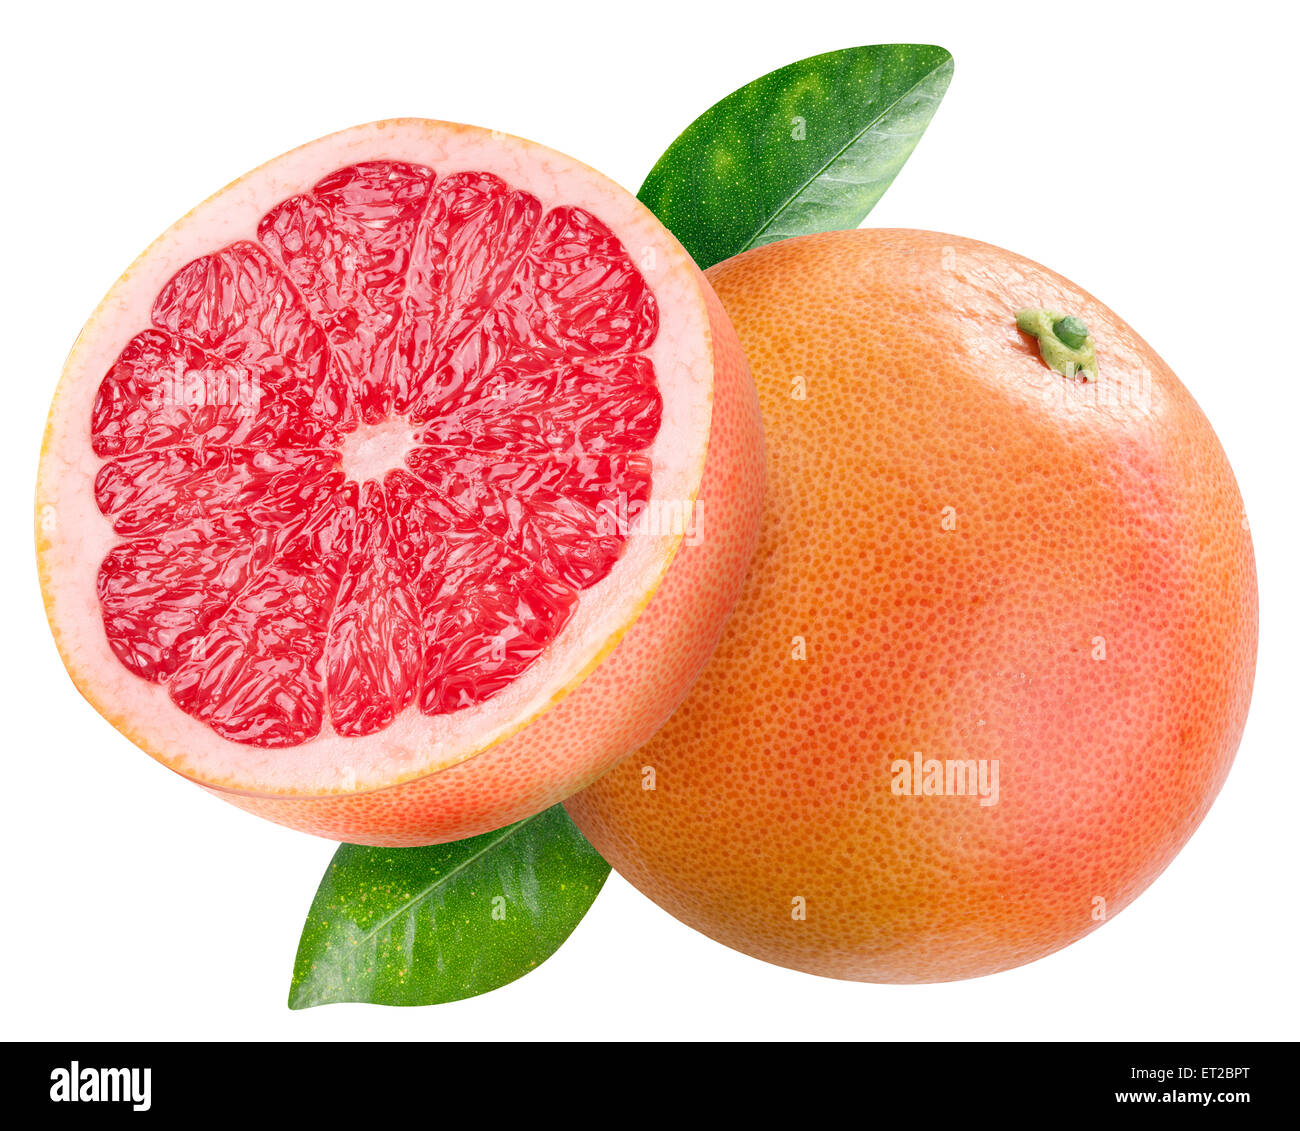 Reife Grapefruit und die Hälfte der Grapefruit. Datei enthält Beschneidungspfade. Stockfoto